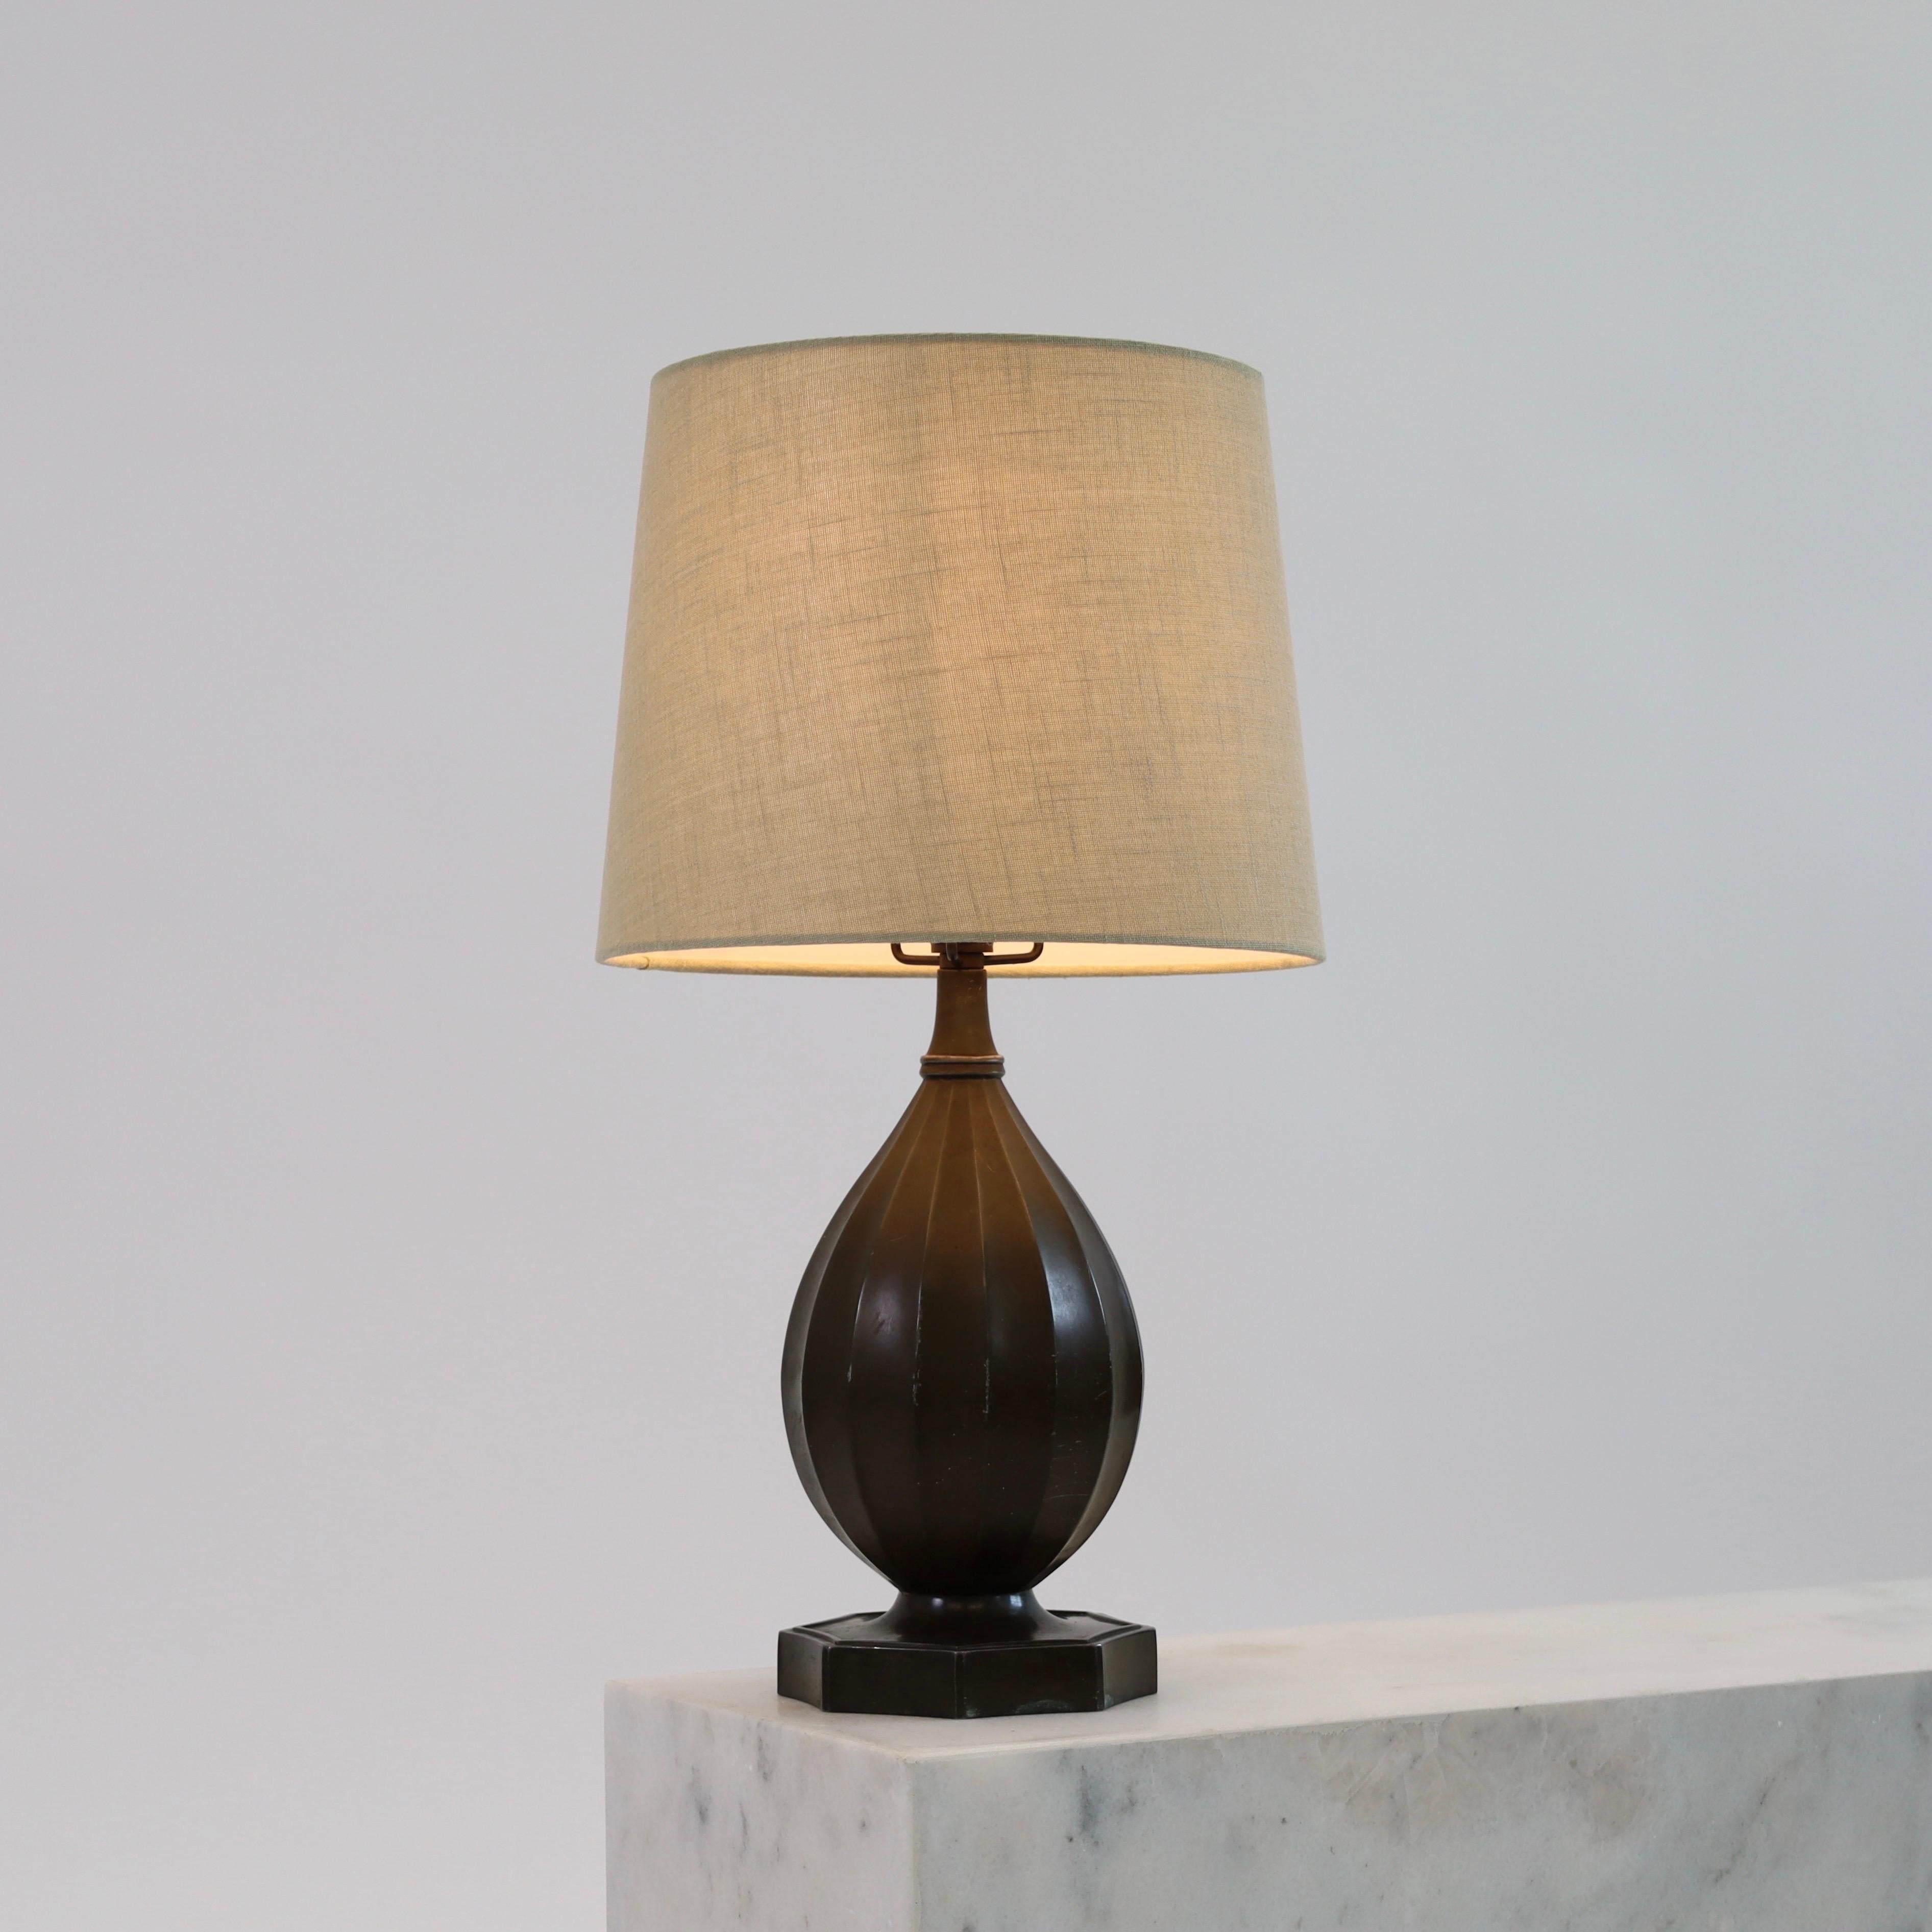 Une lampe de table intemporelle créée par Just Andersen en 1936. Une pièce maîtresse pour une belle maison.  

* Lampe de bureau en métal en forme de bouteille avec des lignes verticales et un abat-jour en tissu beige.
* Designer : Just Andersen
*